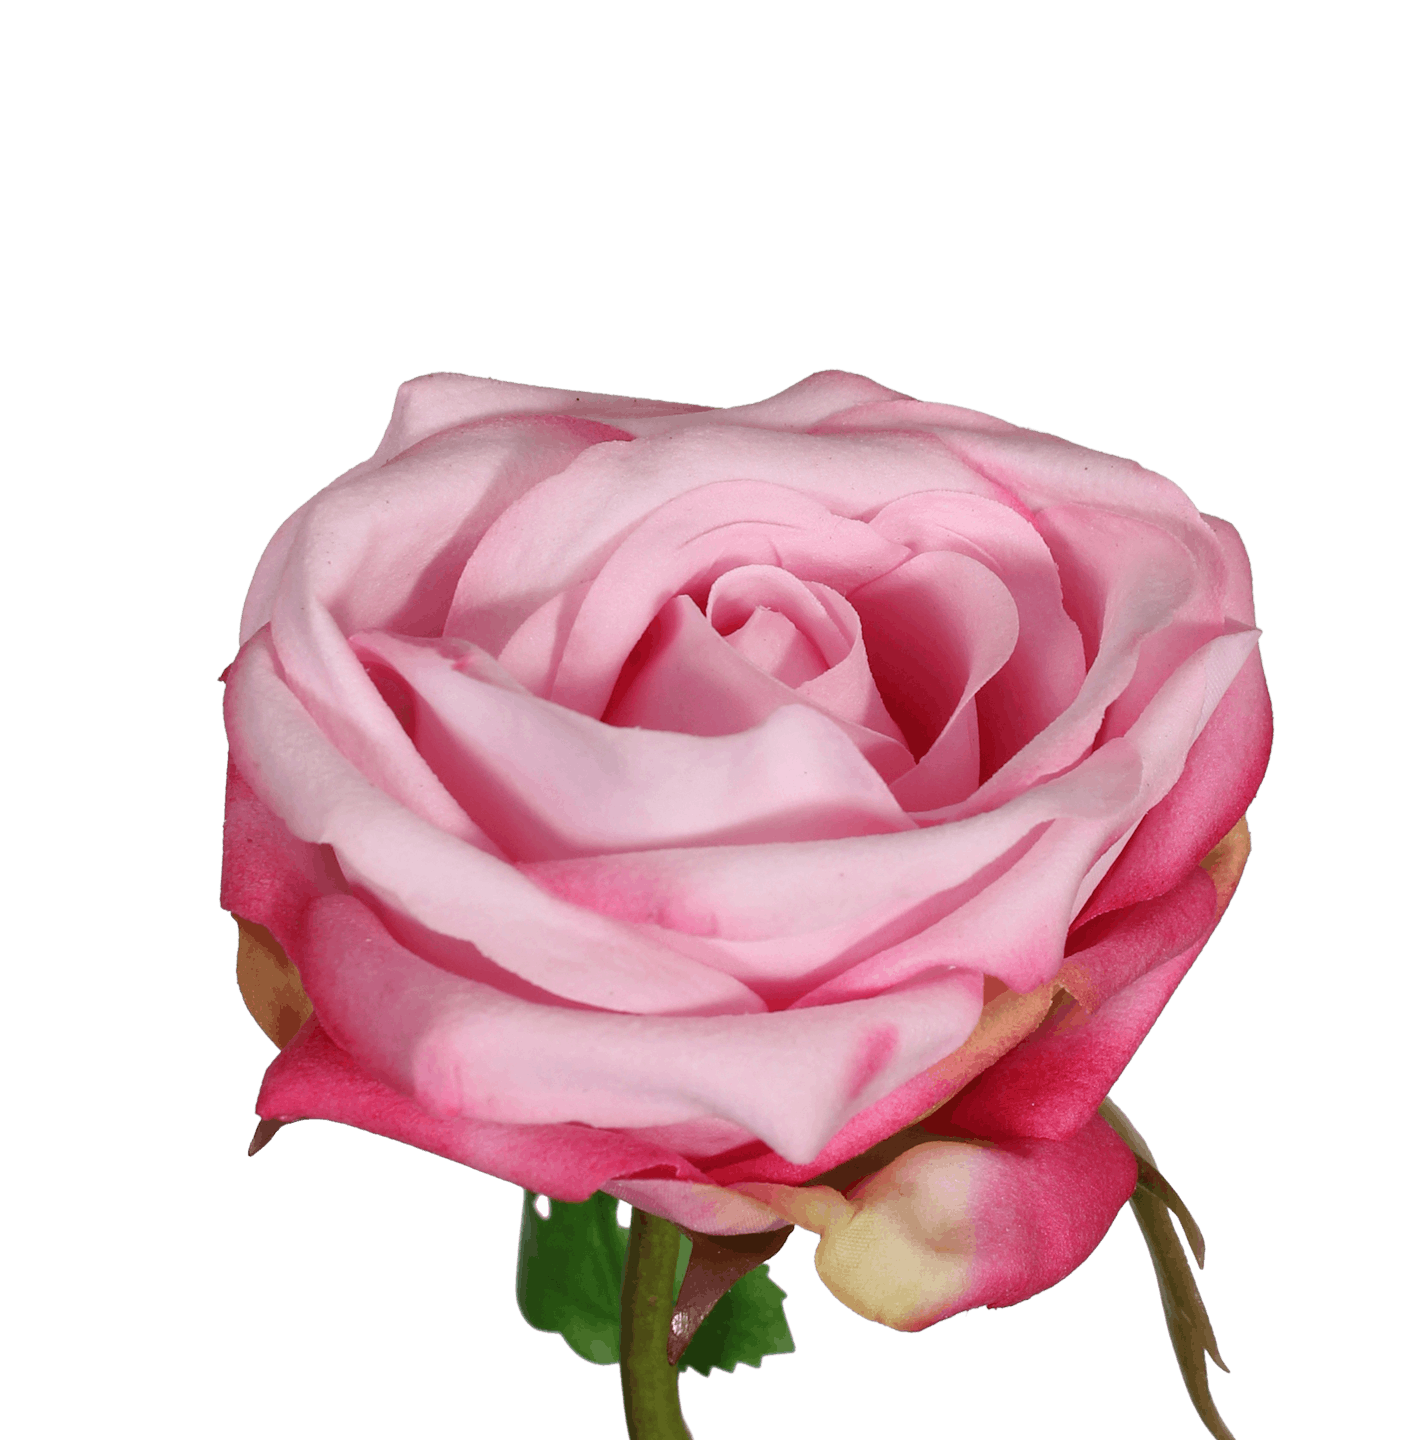 Artificial light pink rose flower